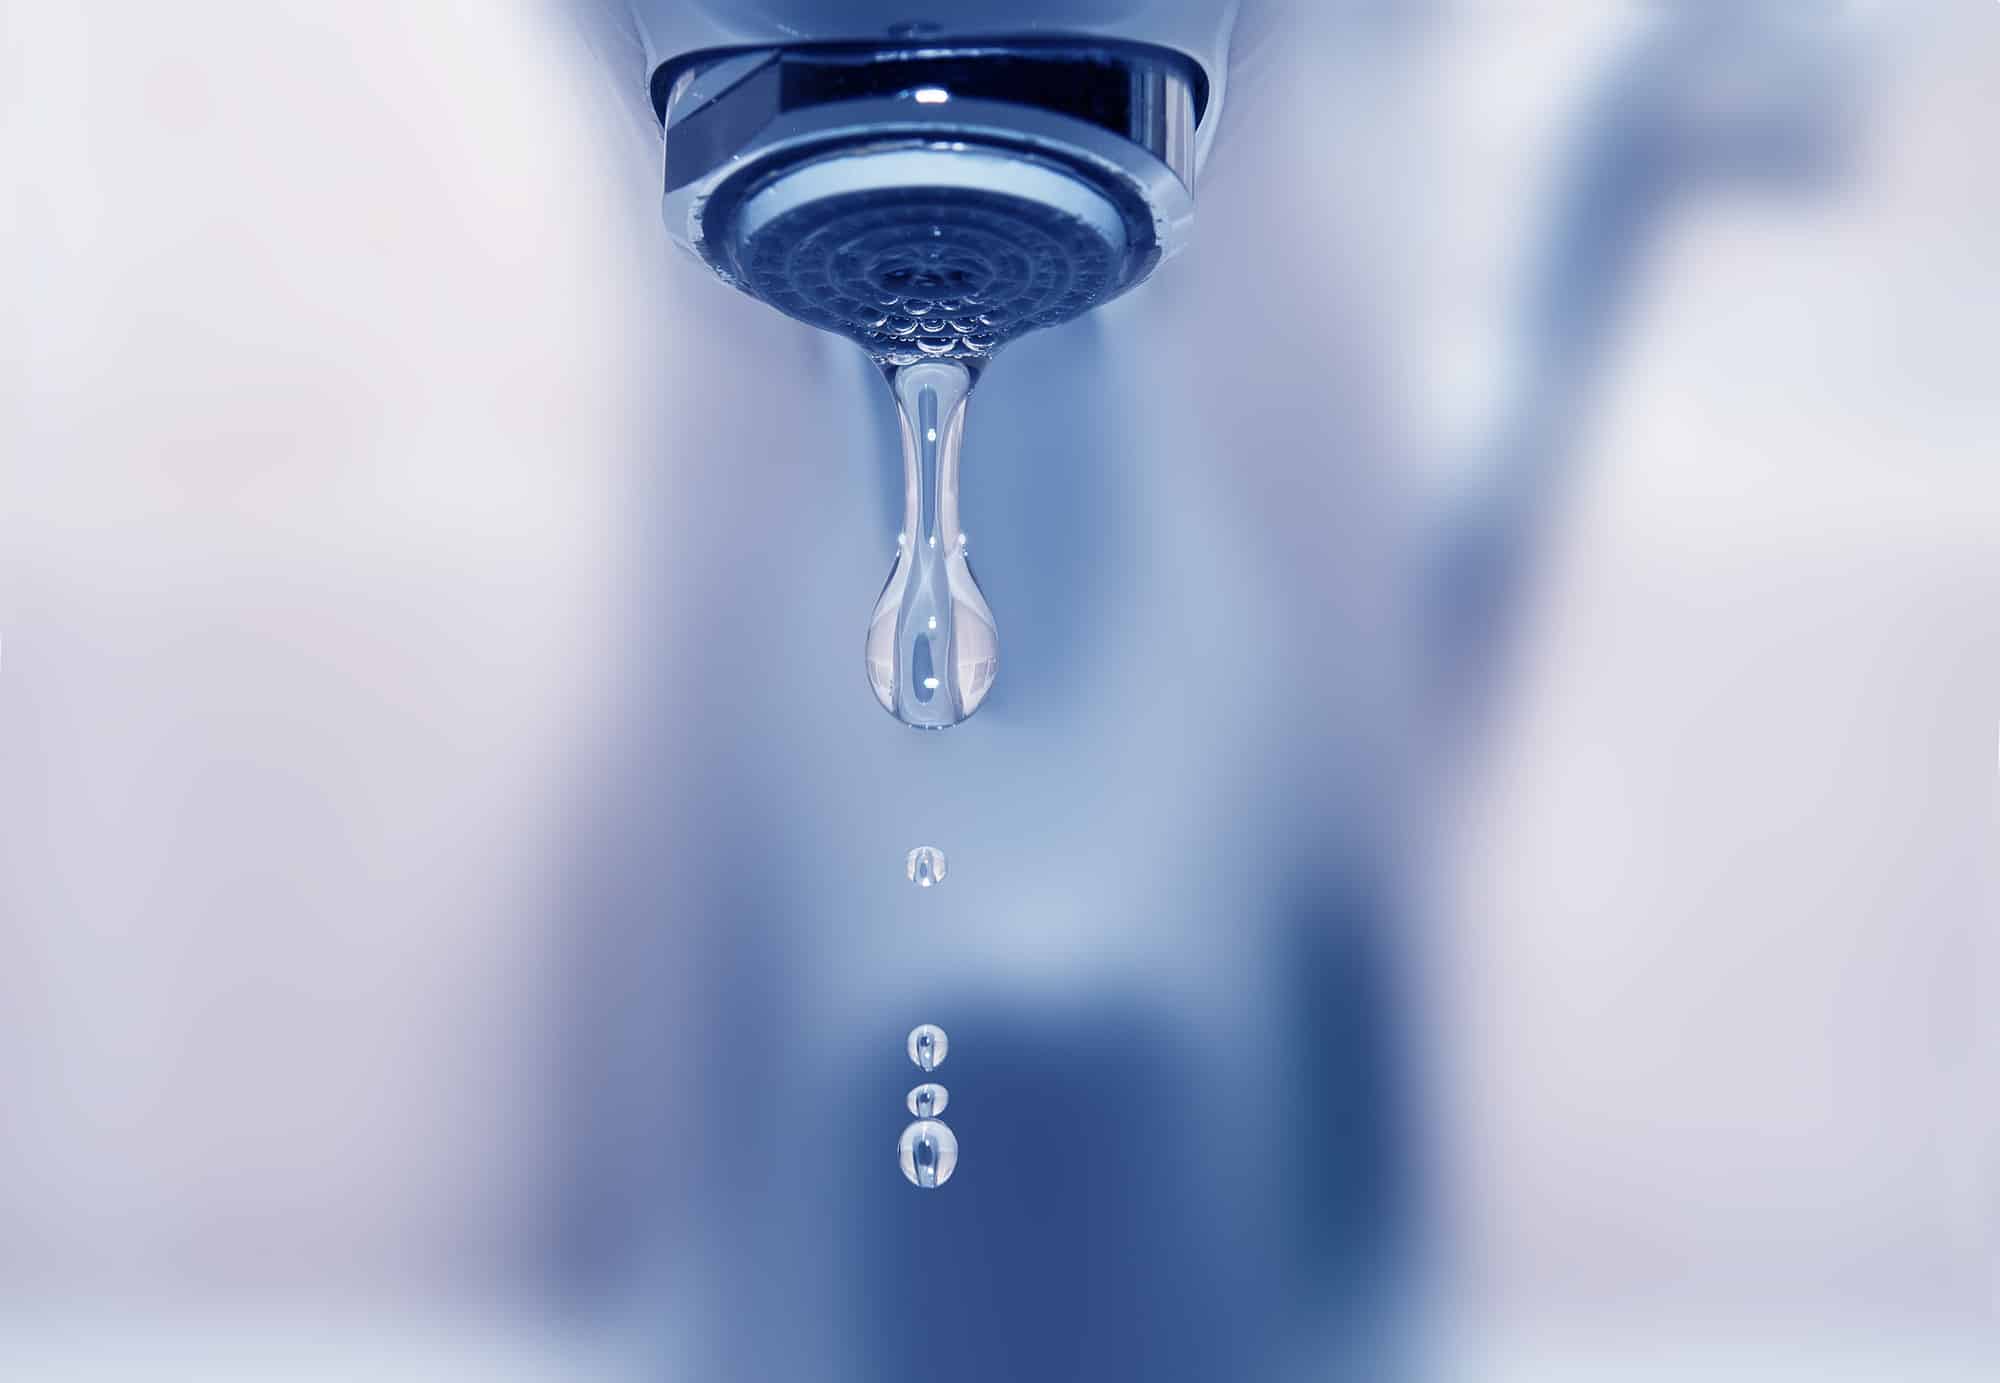 What Causes Weak Water Pressure?